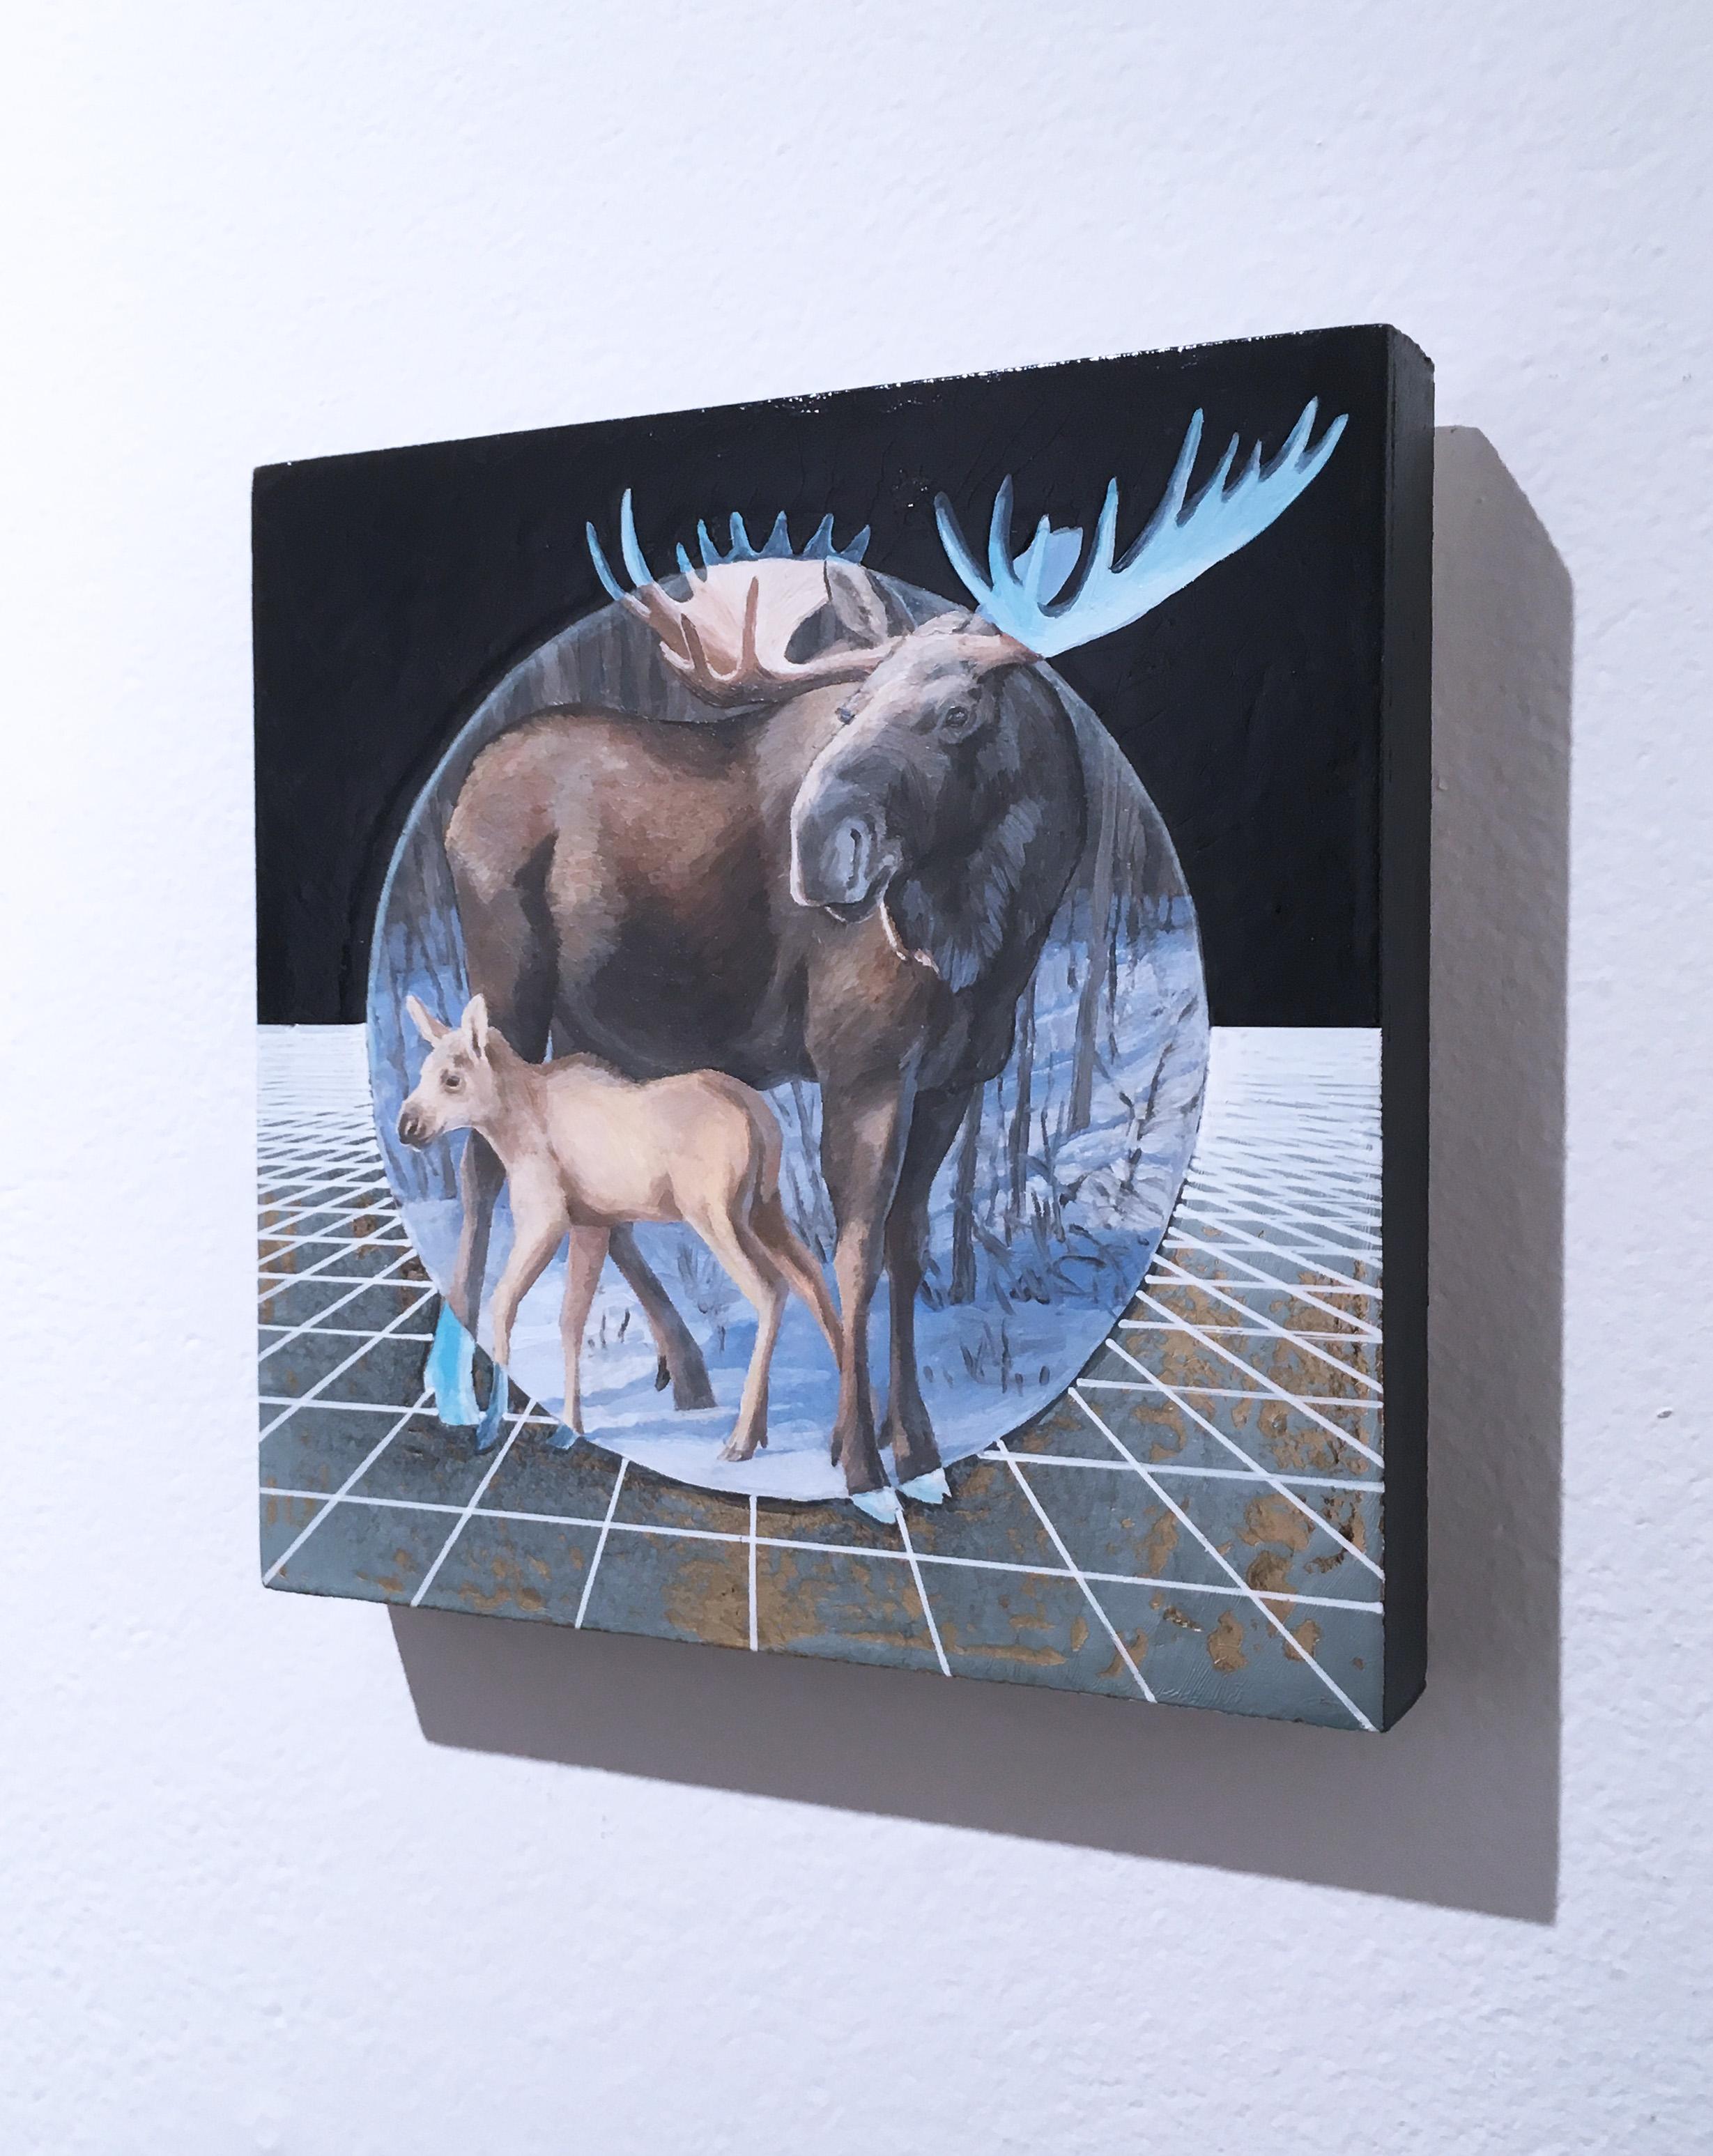 Moose, or, huile, feuille métallique, bleu, arbres, animaux, paysage, grille - Contemporain Painting par Alexis Kandra